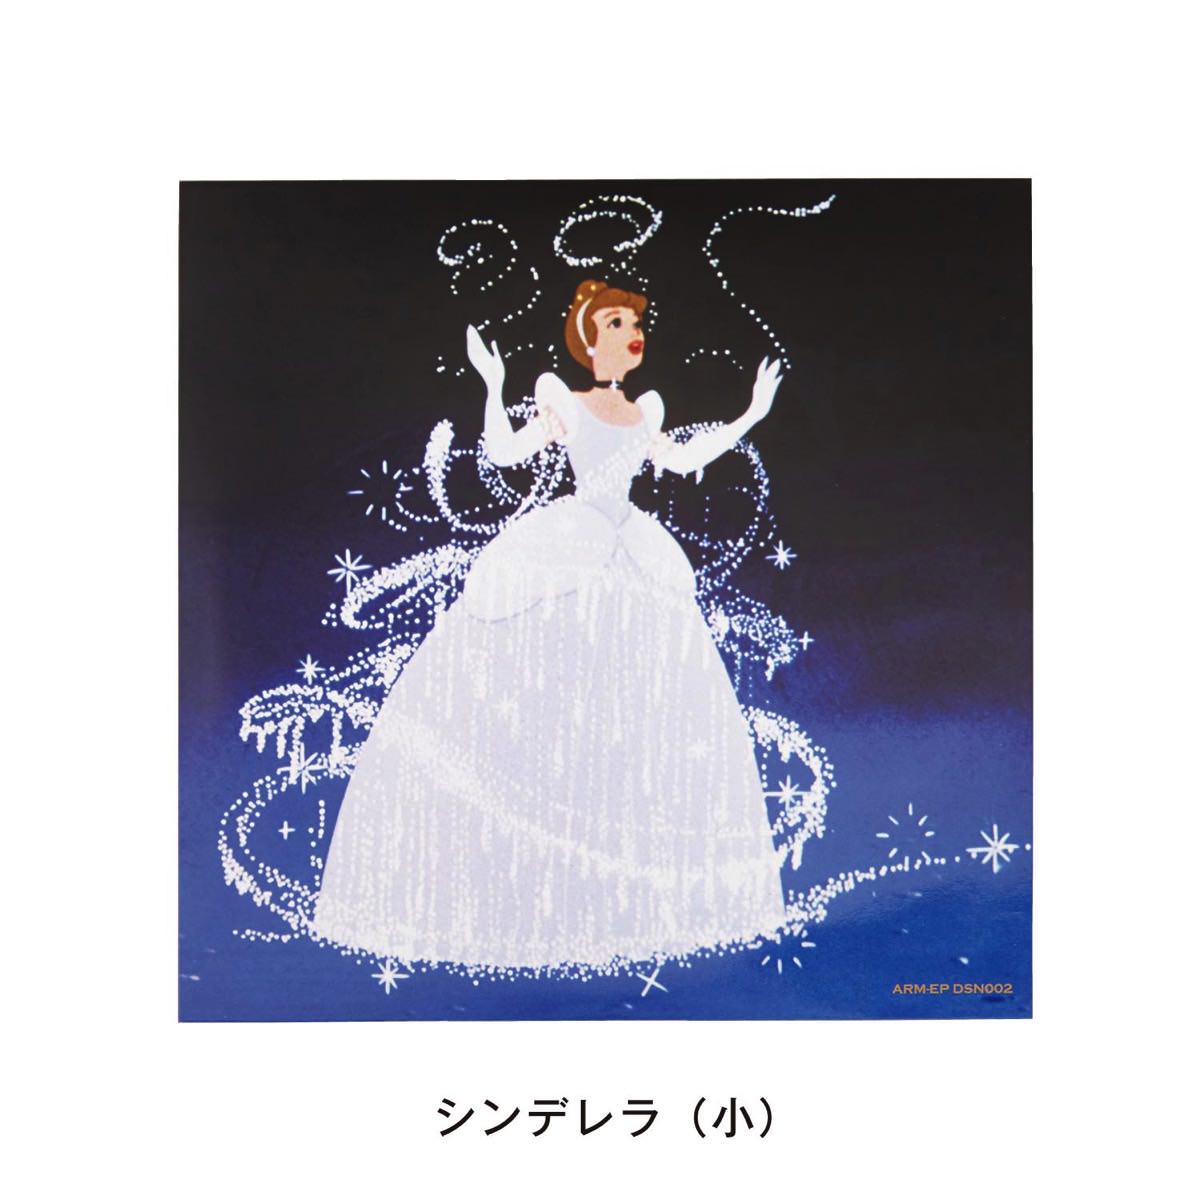 204円 第一ネット ディズニーアロマレコード 白雪姫